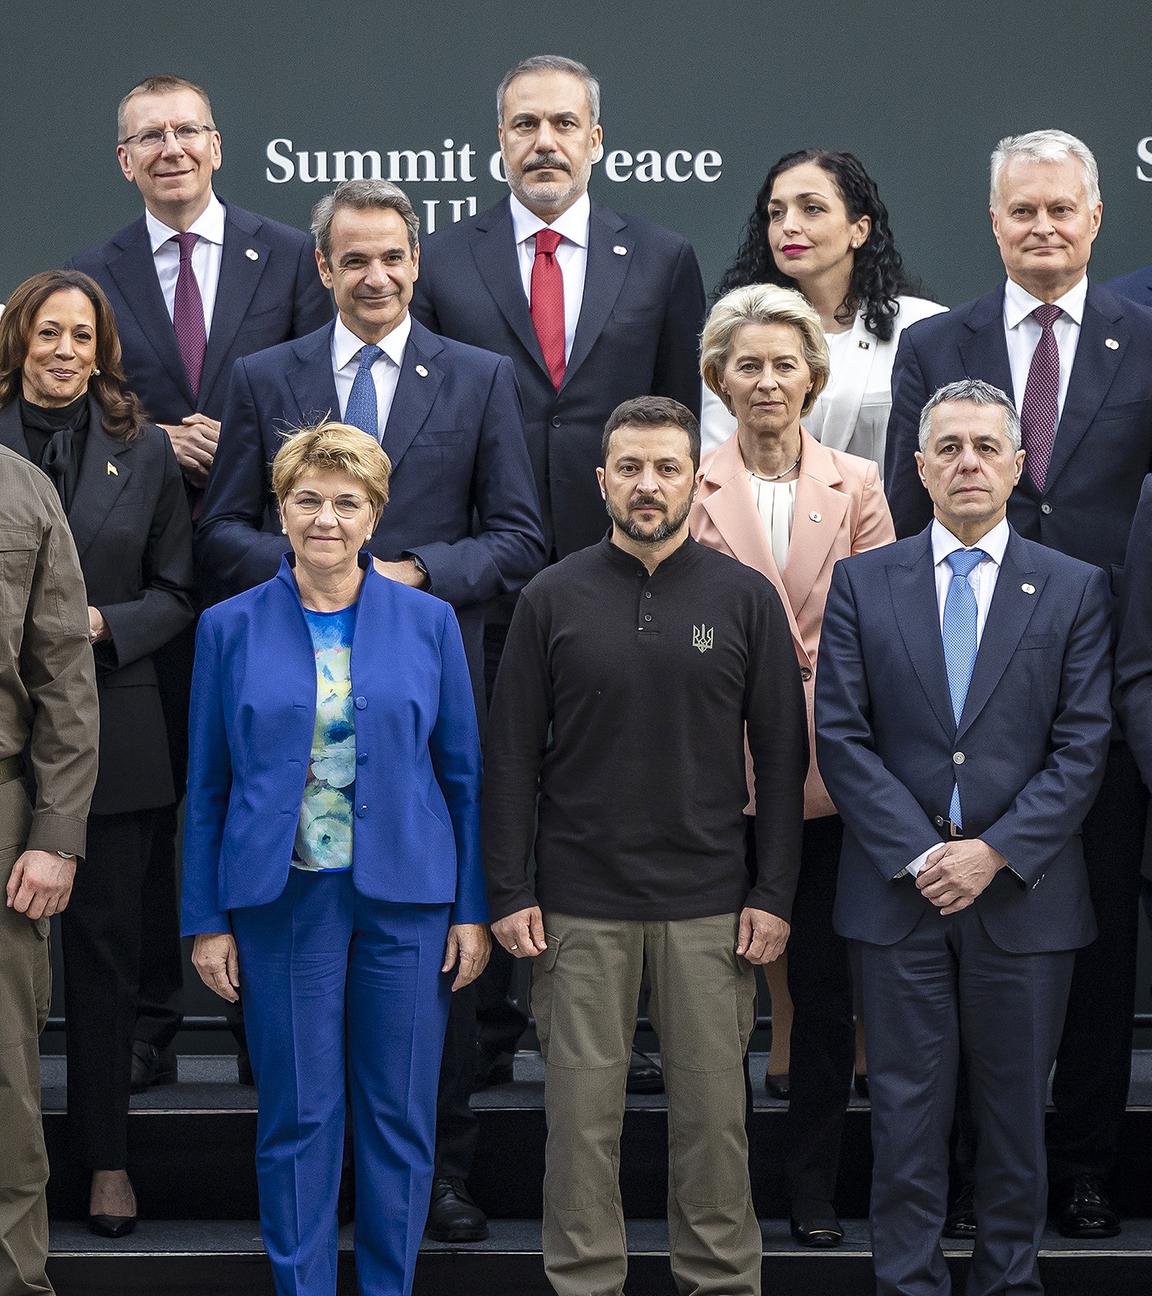 Wolodymyr Selenskyj mit Staatsoberhäuptern beim Familienfoto der Gipfels zum Frieden in der Ukraine